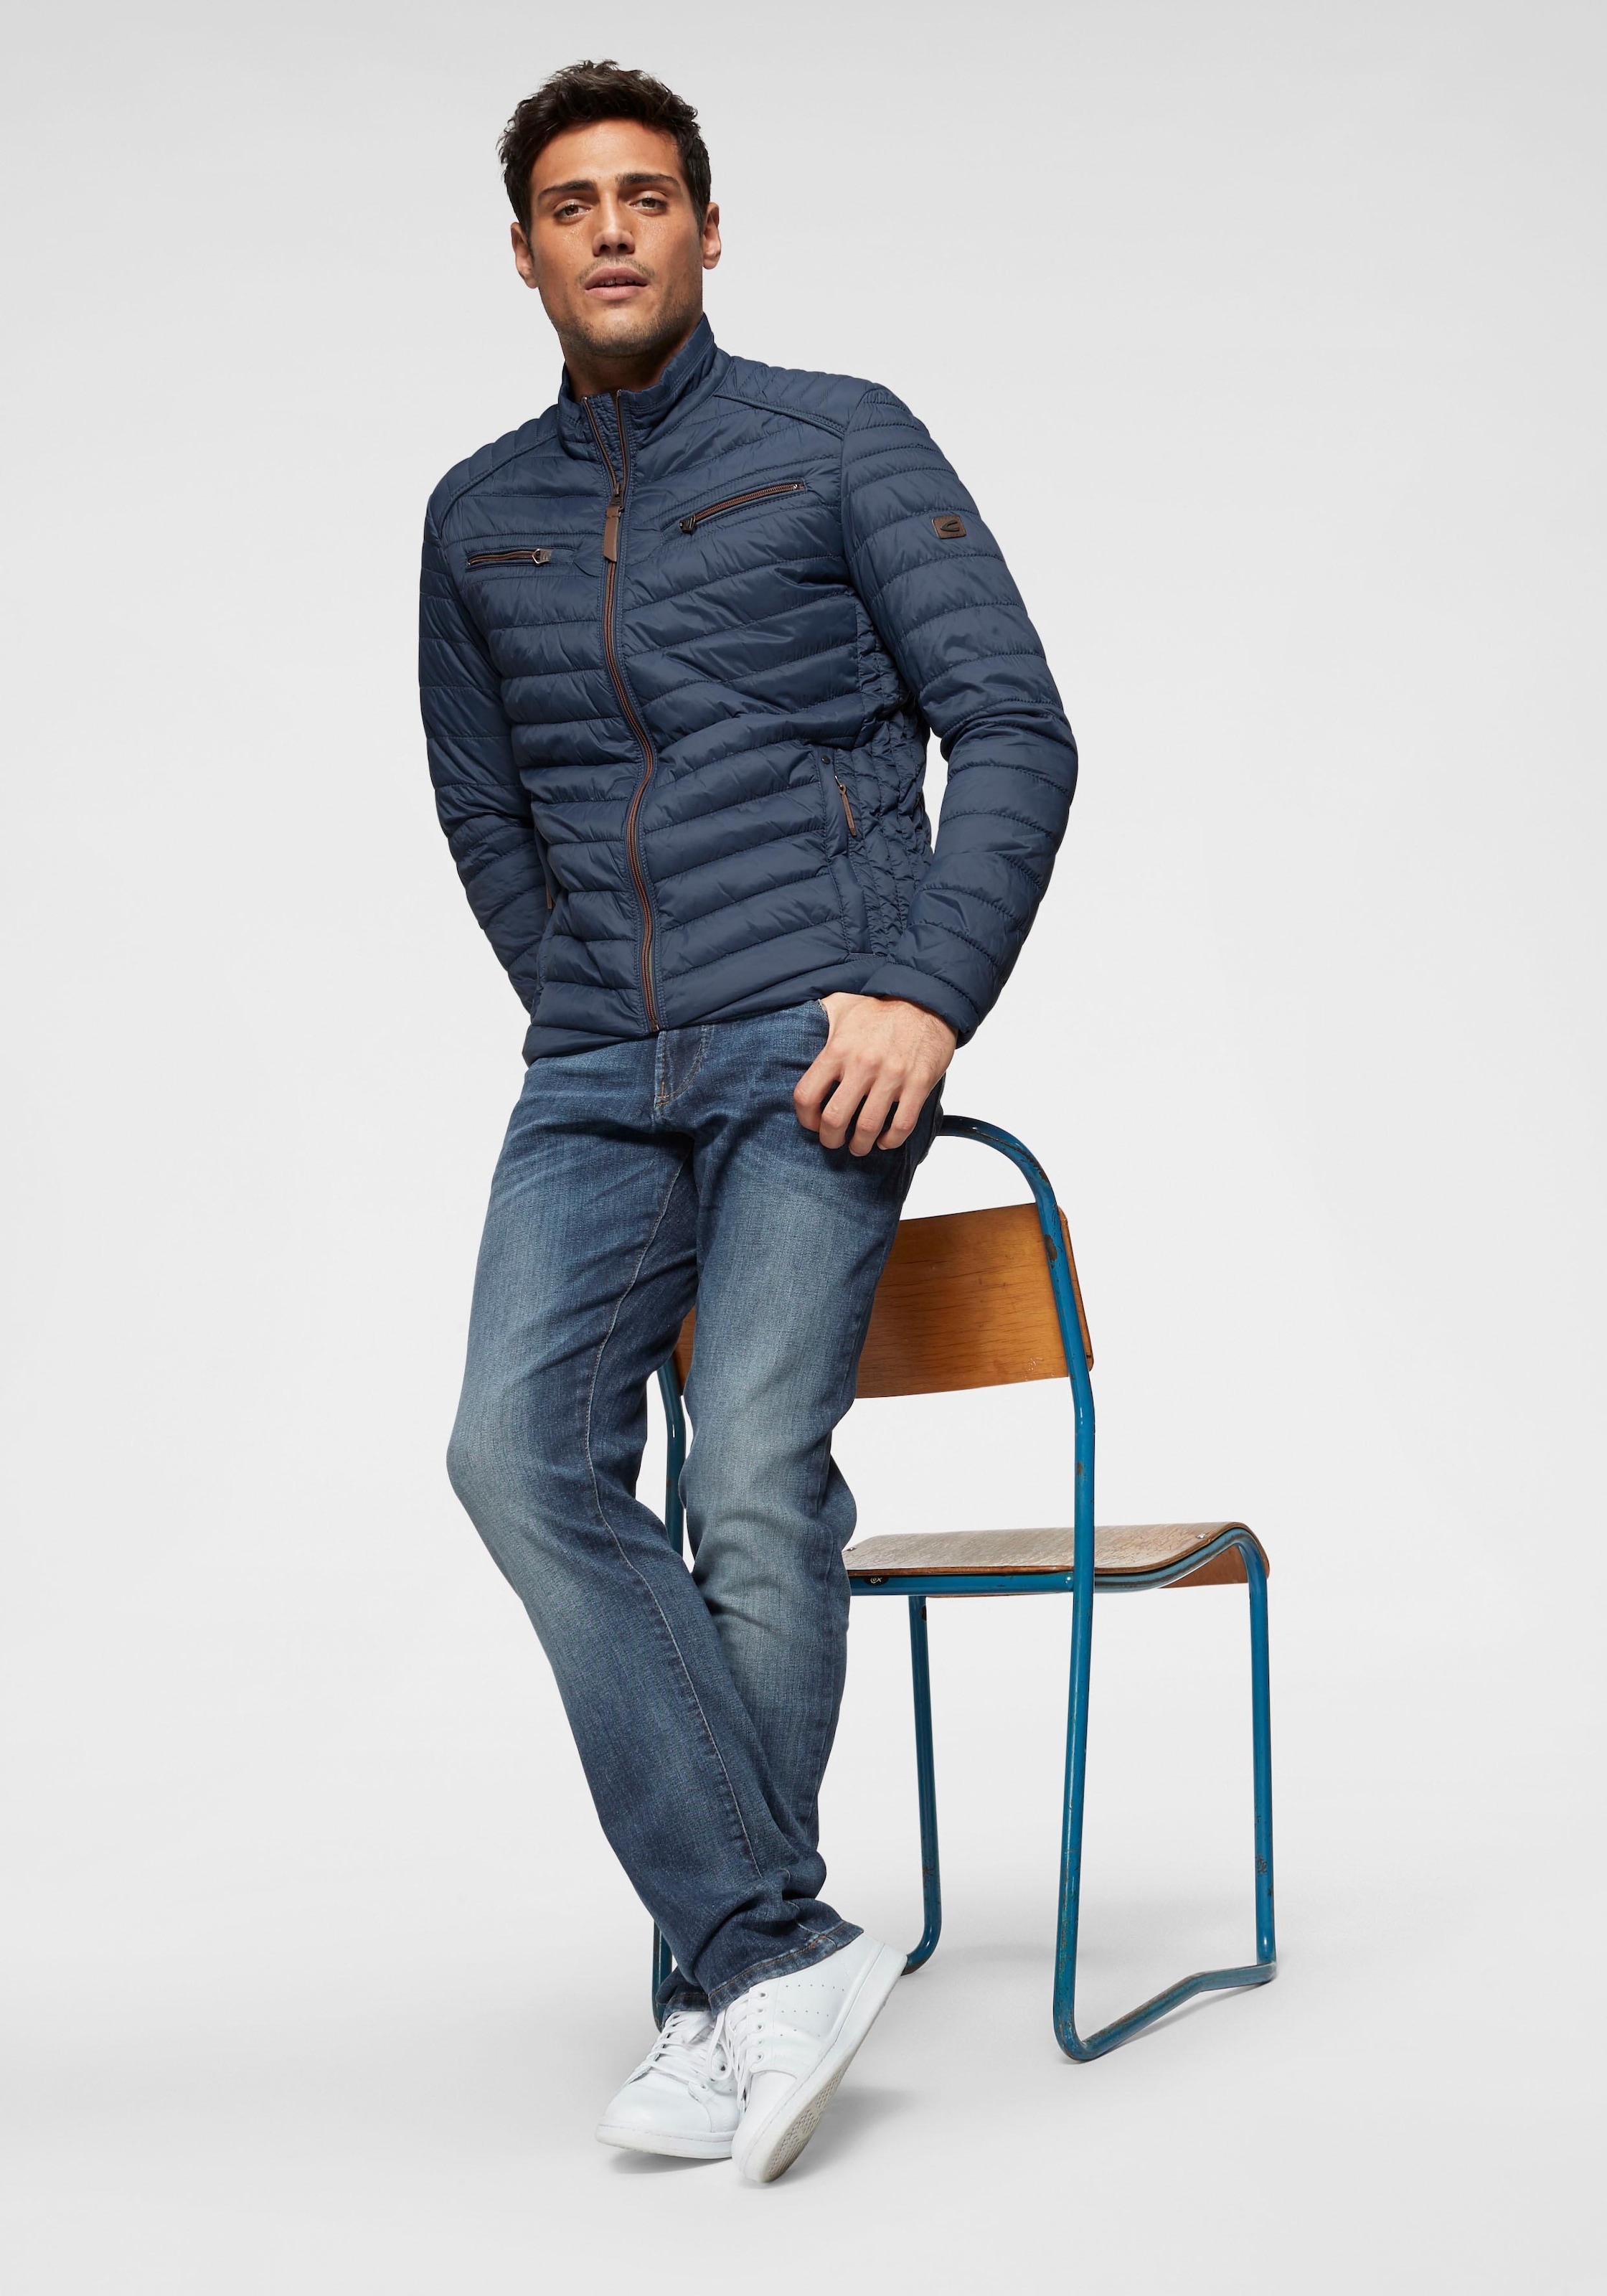 camel active Regular-fit-Jeans »HOUSTON«, im klassischen 5-Pocket-Stil